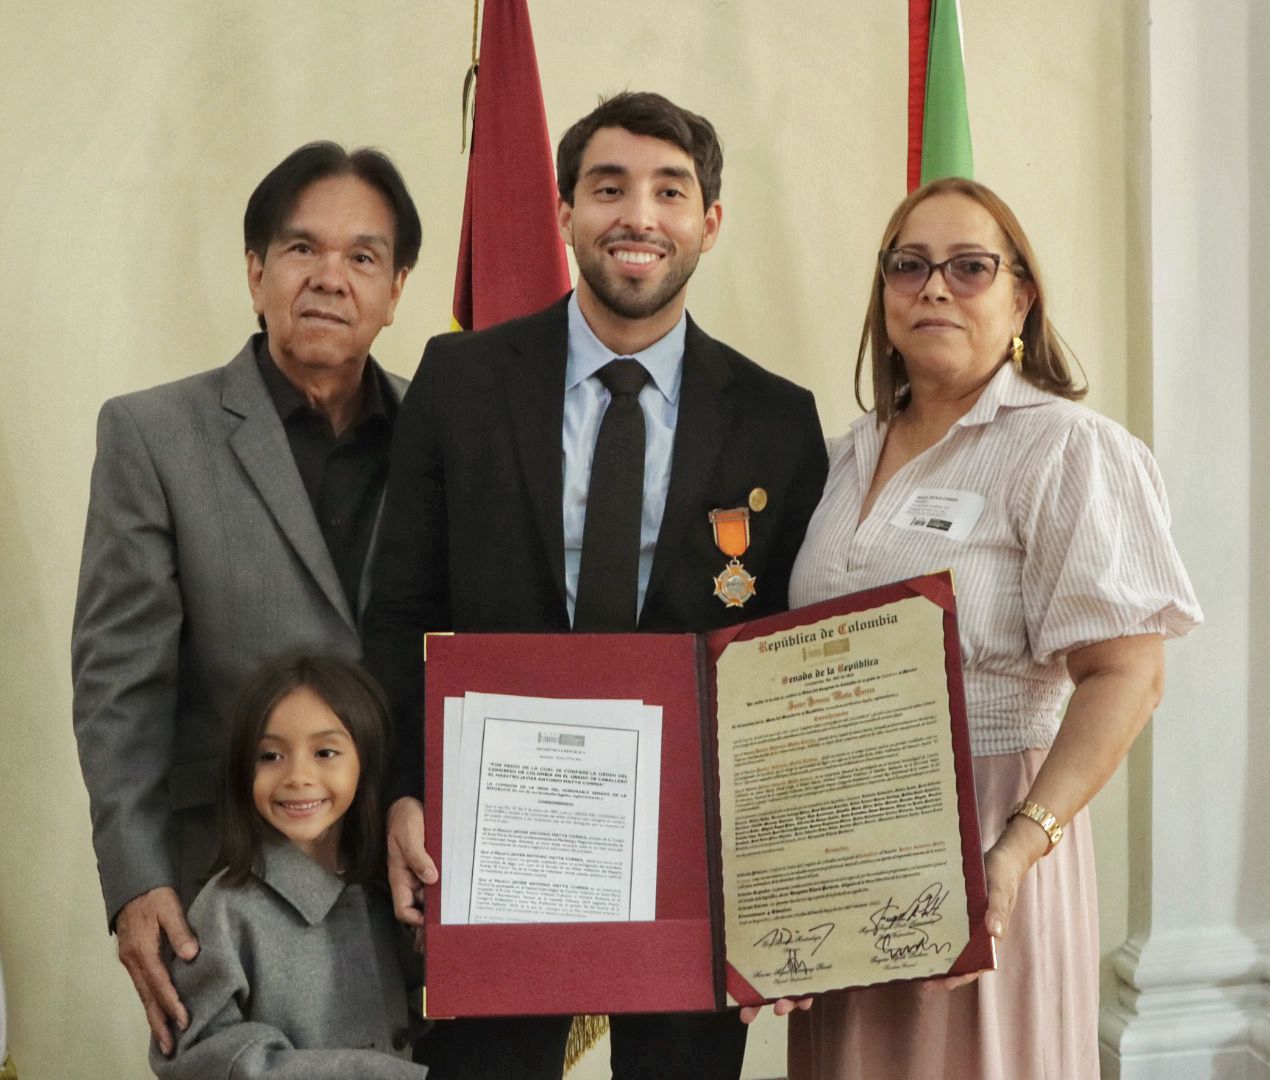 El rey vallenato Javier Matta Correa acompañado de sus familiares. 

FOTO: CORTESÍA. 